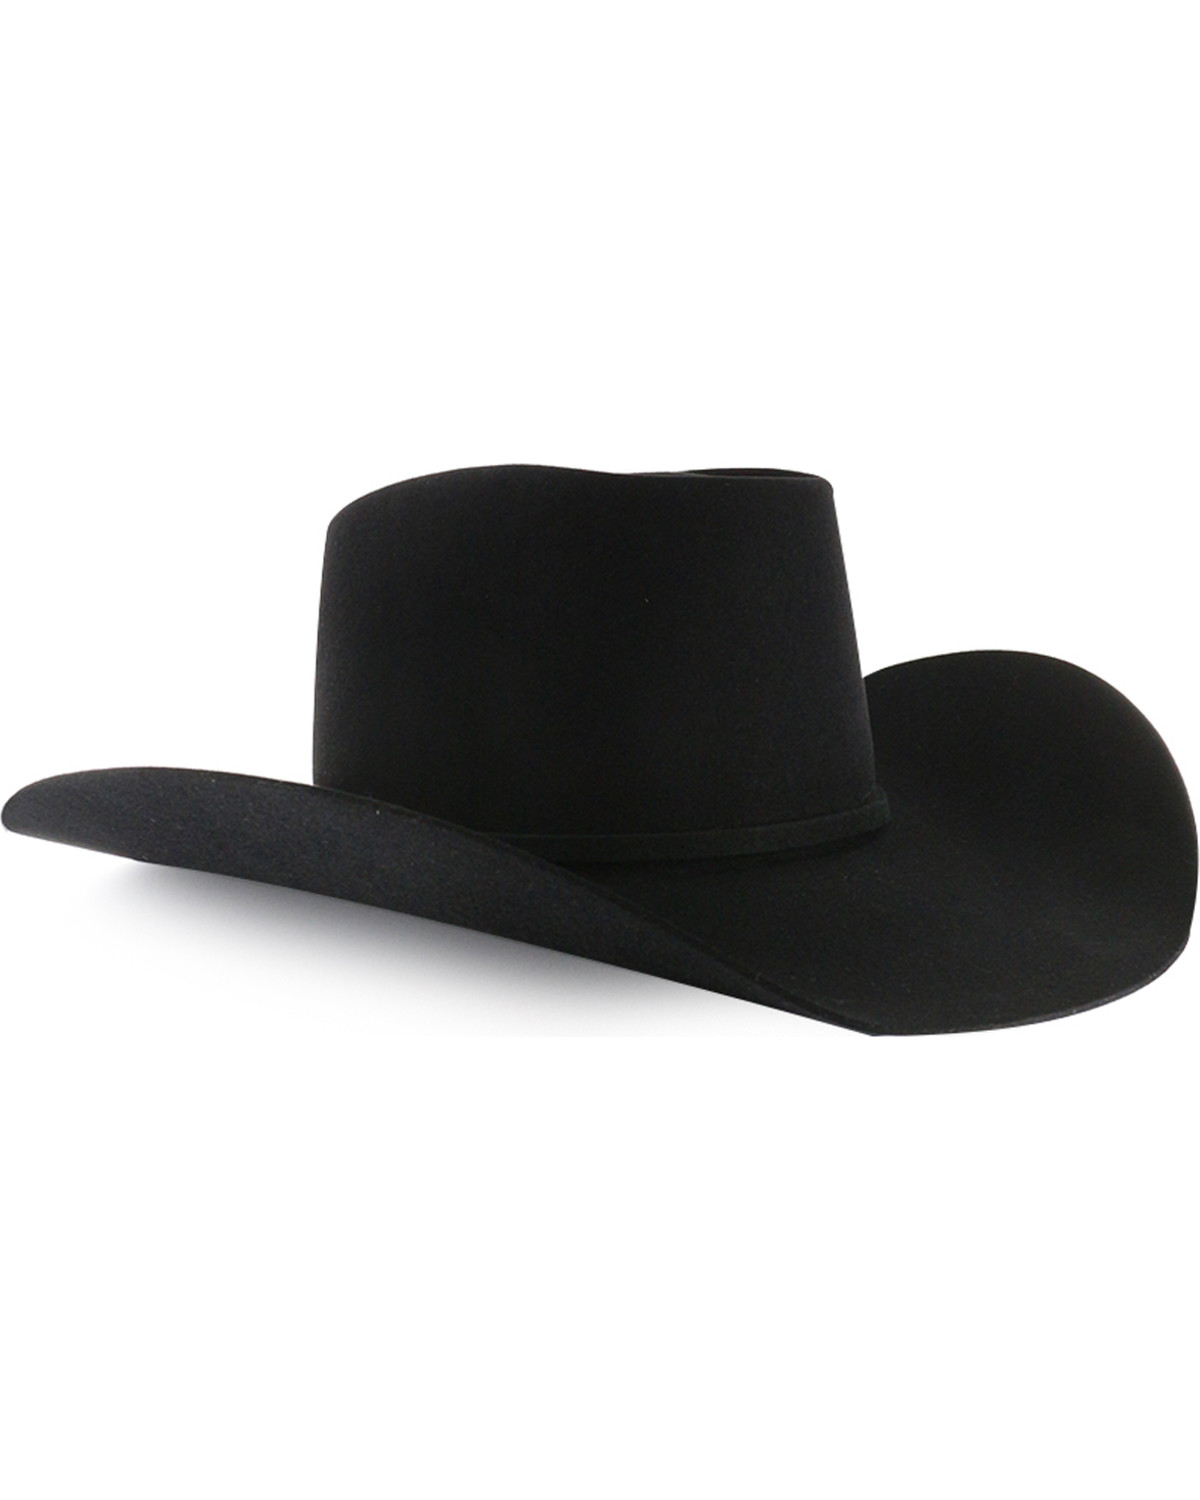 Rodeo King Men's Brick 5X Felt Cowboy Hat